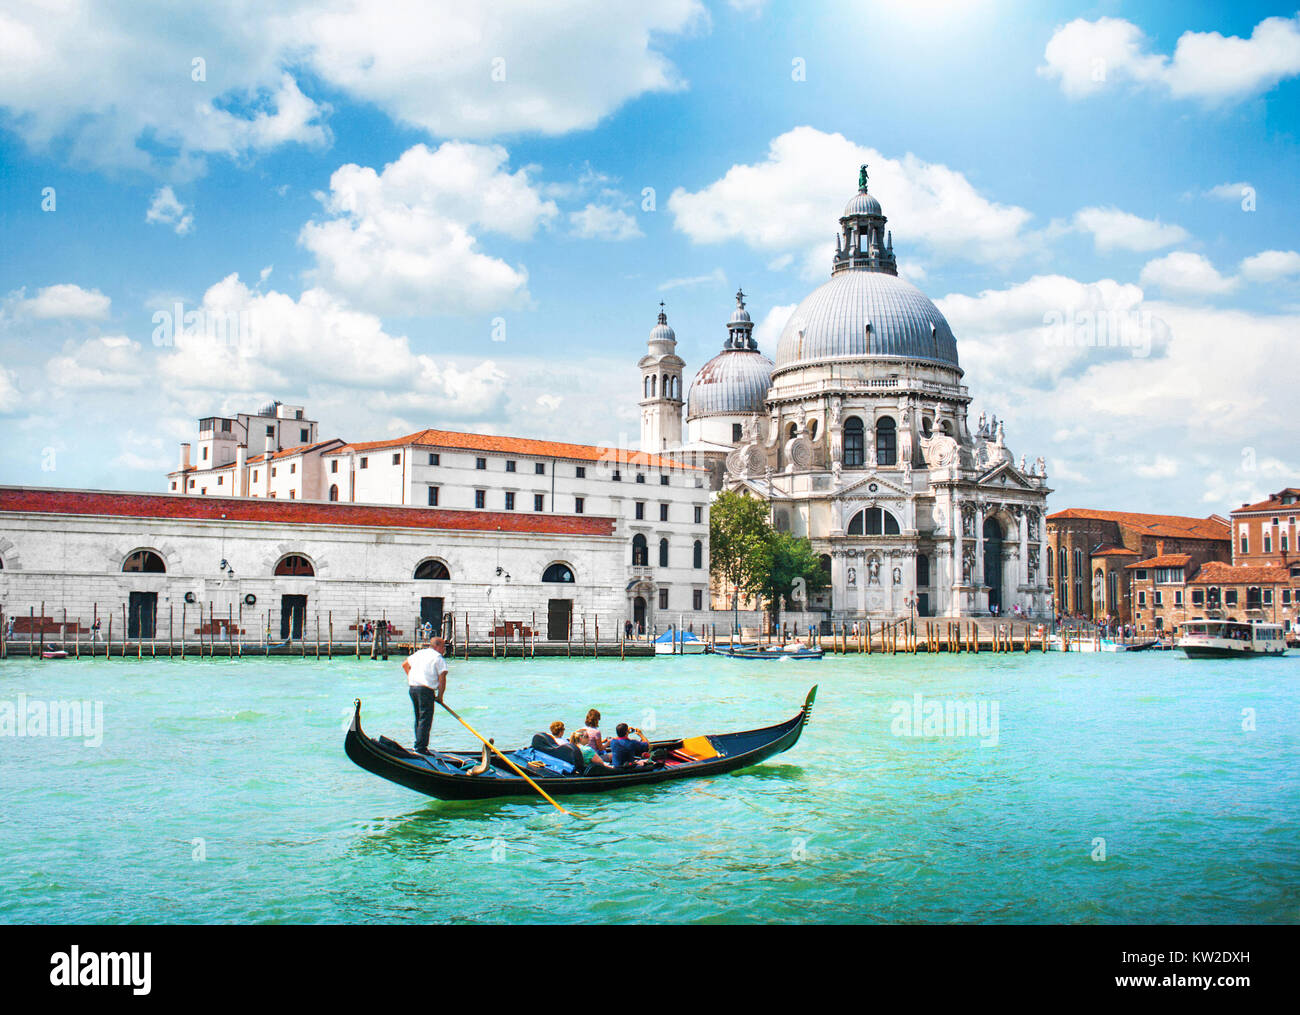 Gondola sul Canal Grande con la Basilica di Santa Maria della Salute in background, Venezia, Italia Foto Stock